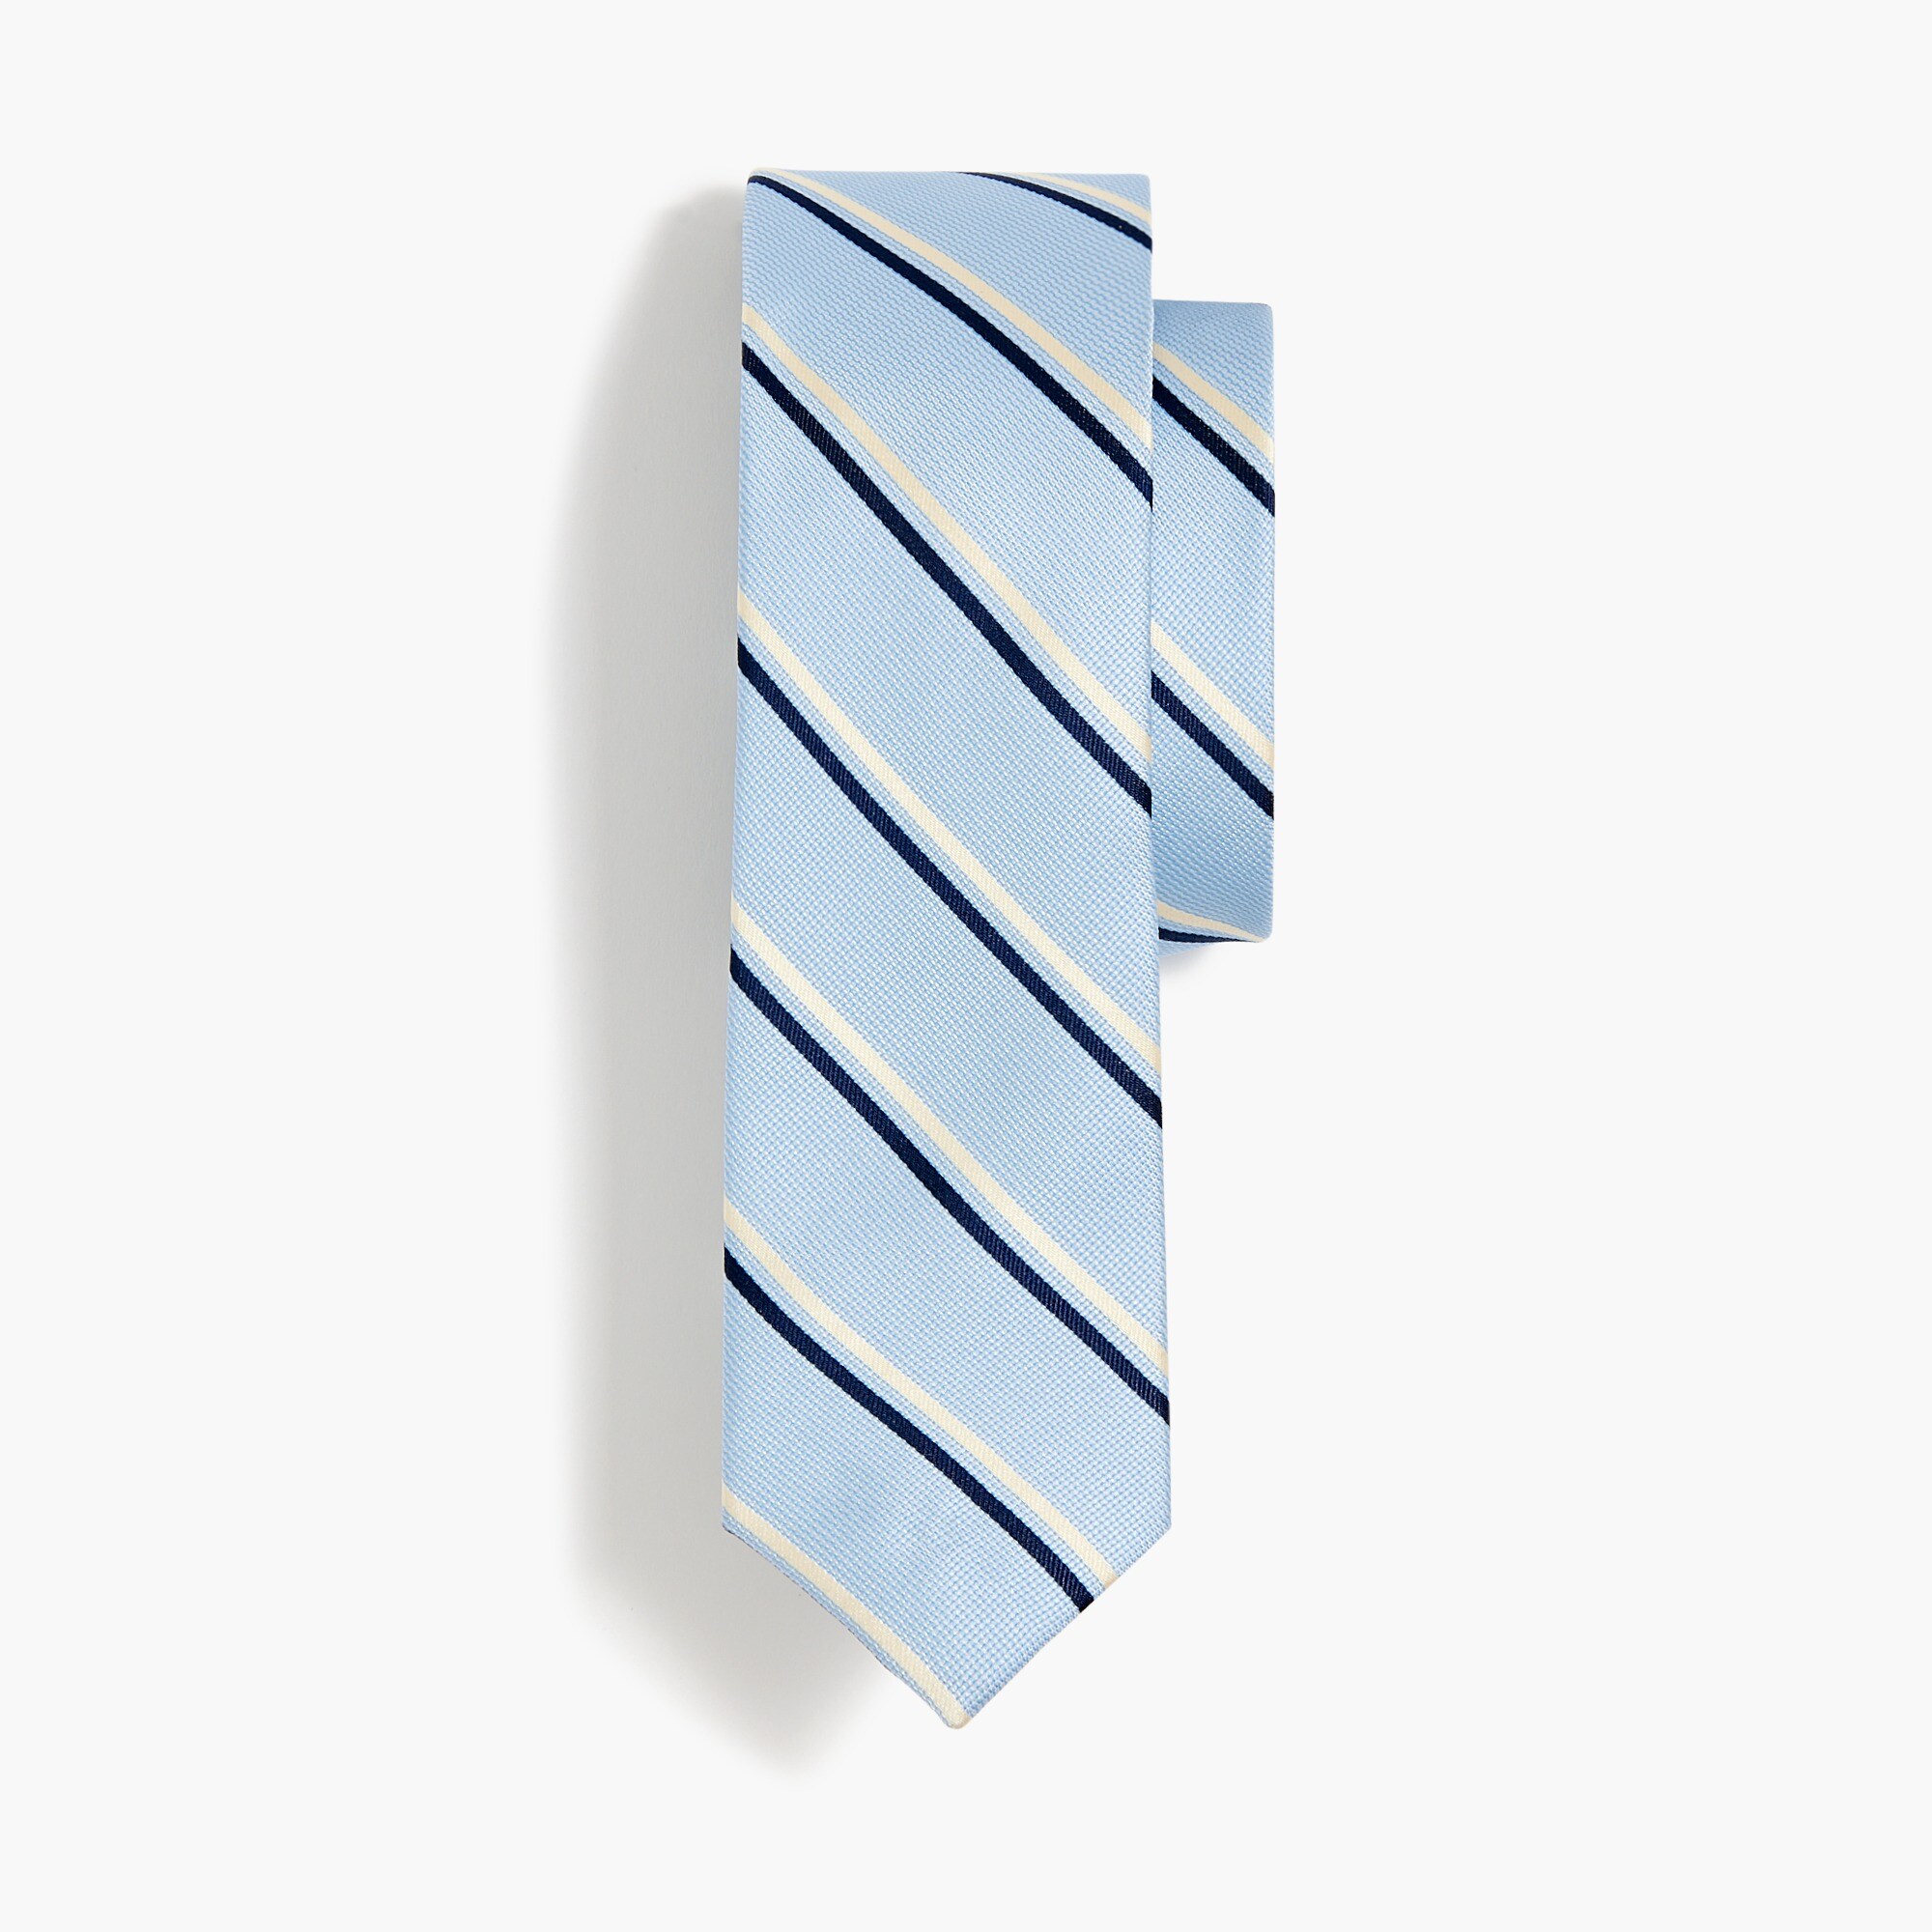  Boys' striped tie